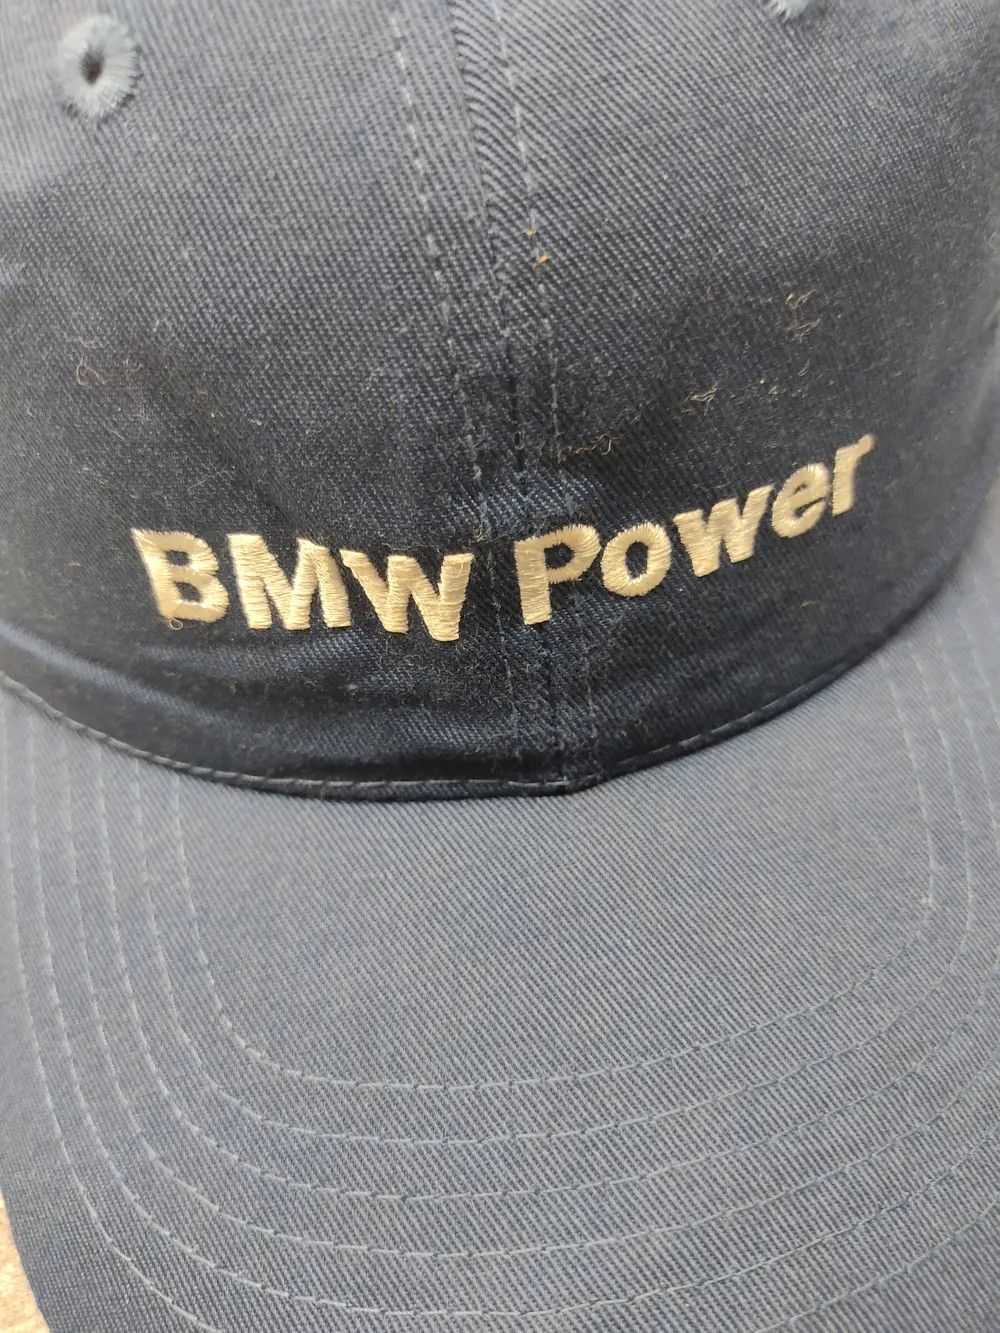 Bmw × Racing × Vintage Vintage BMW Power Cap Hat - image 3